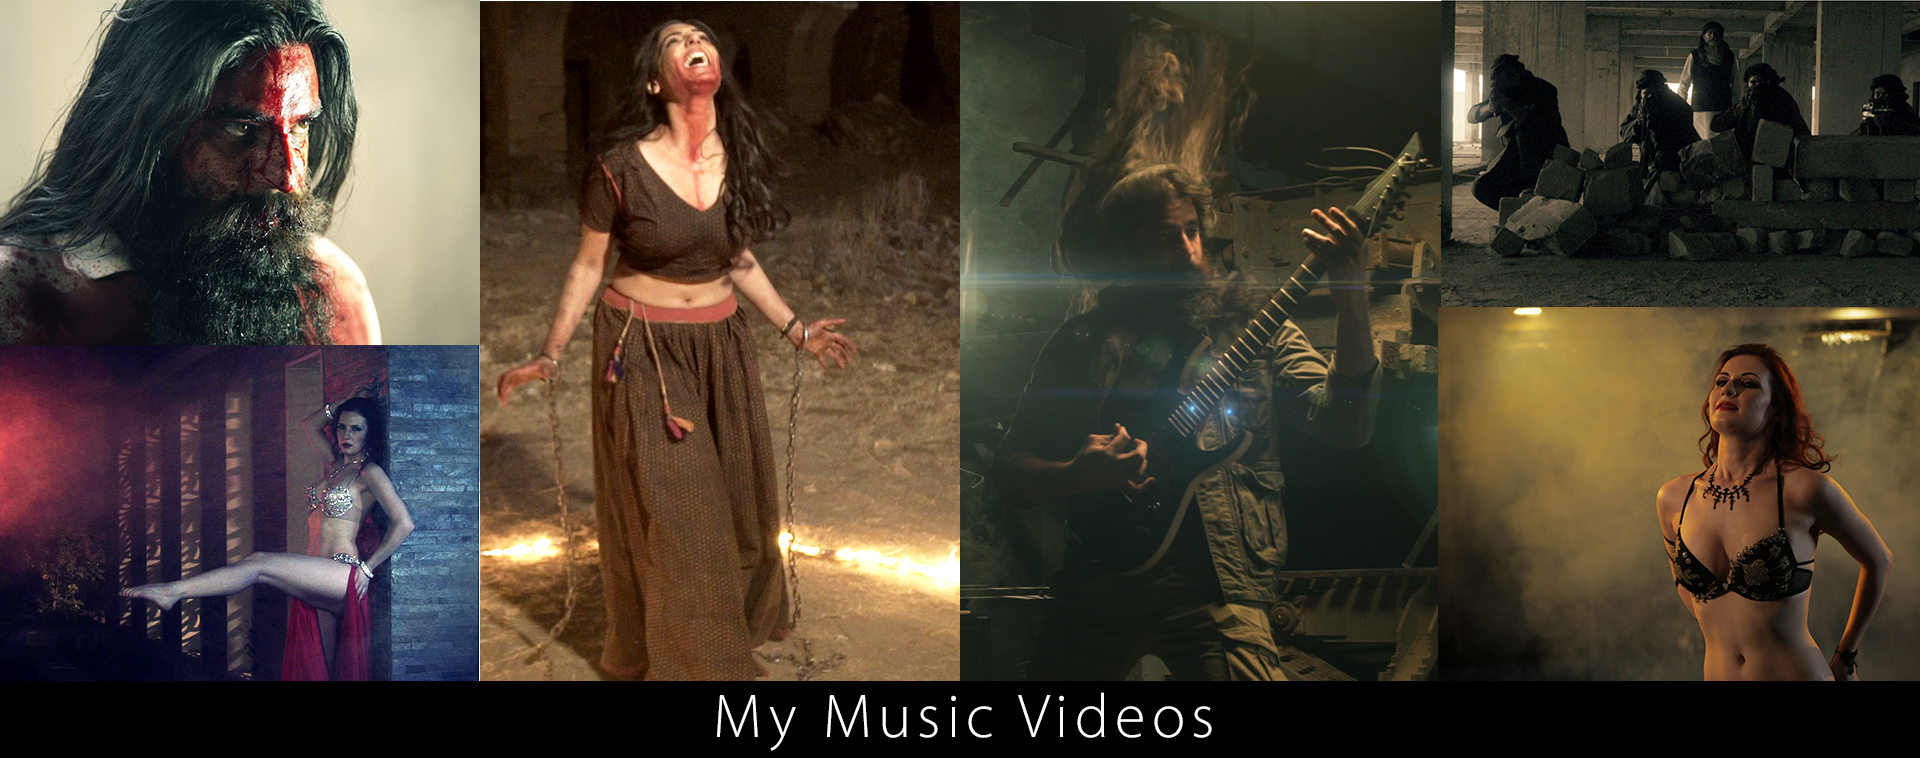 My Music Videos